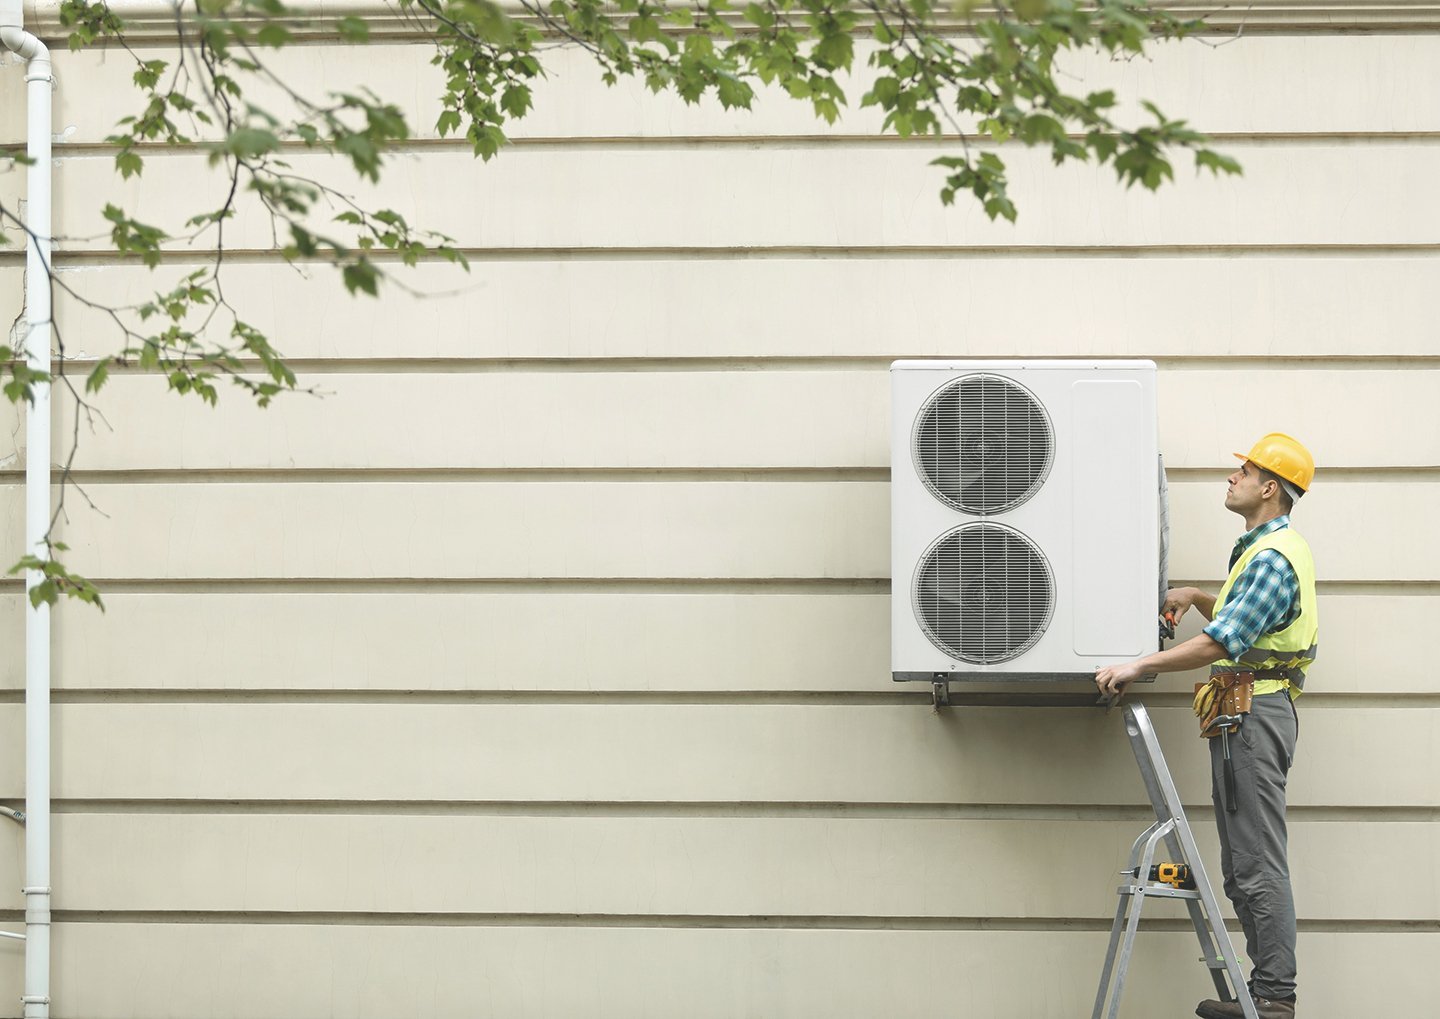 Bauarbeiter montiert Wärmepumpe an eine Häuserwand